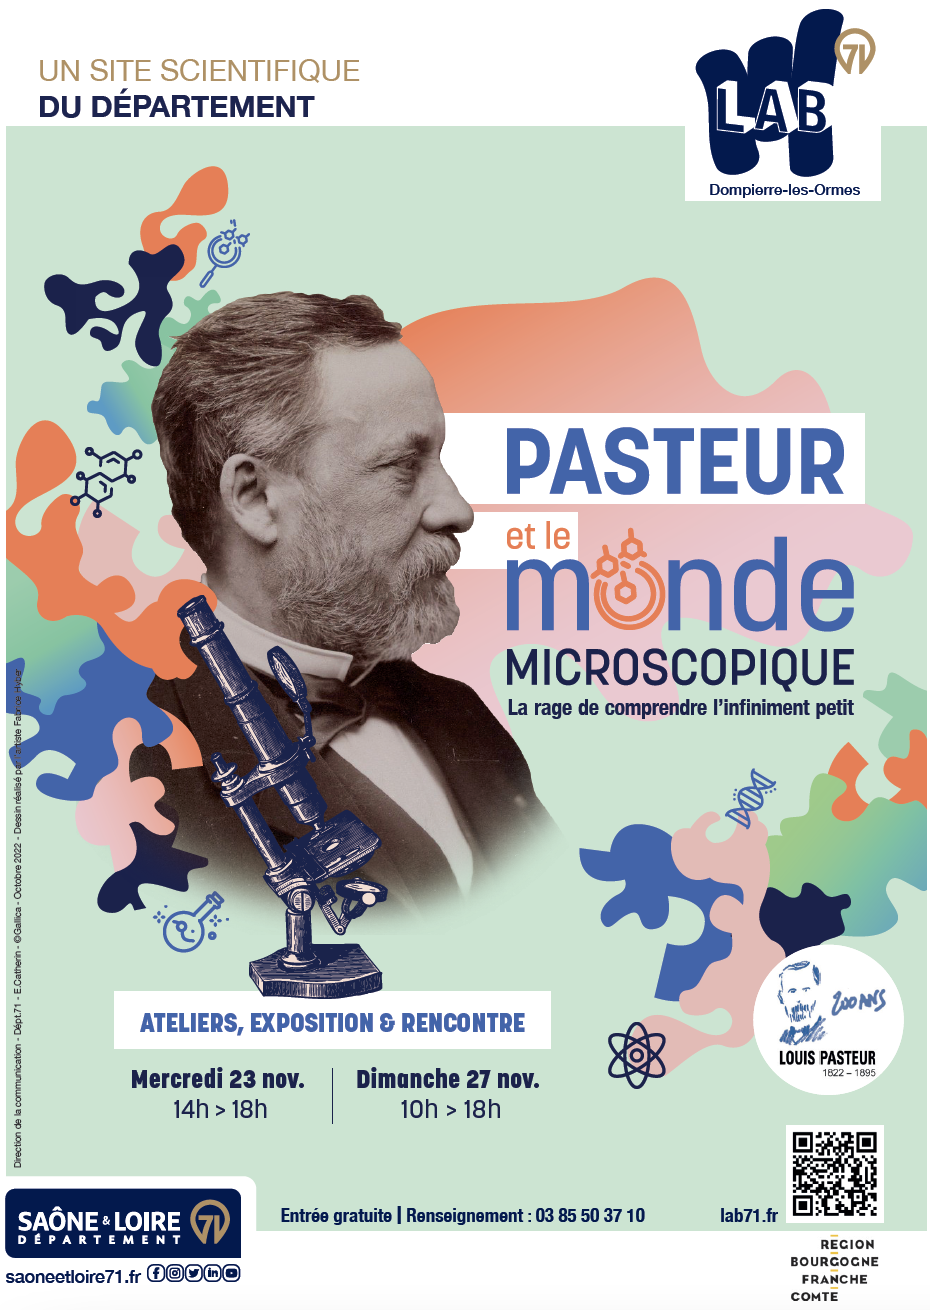 Pasteur et le monde microscopique, une expérience à ne pas manquer